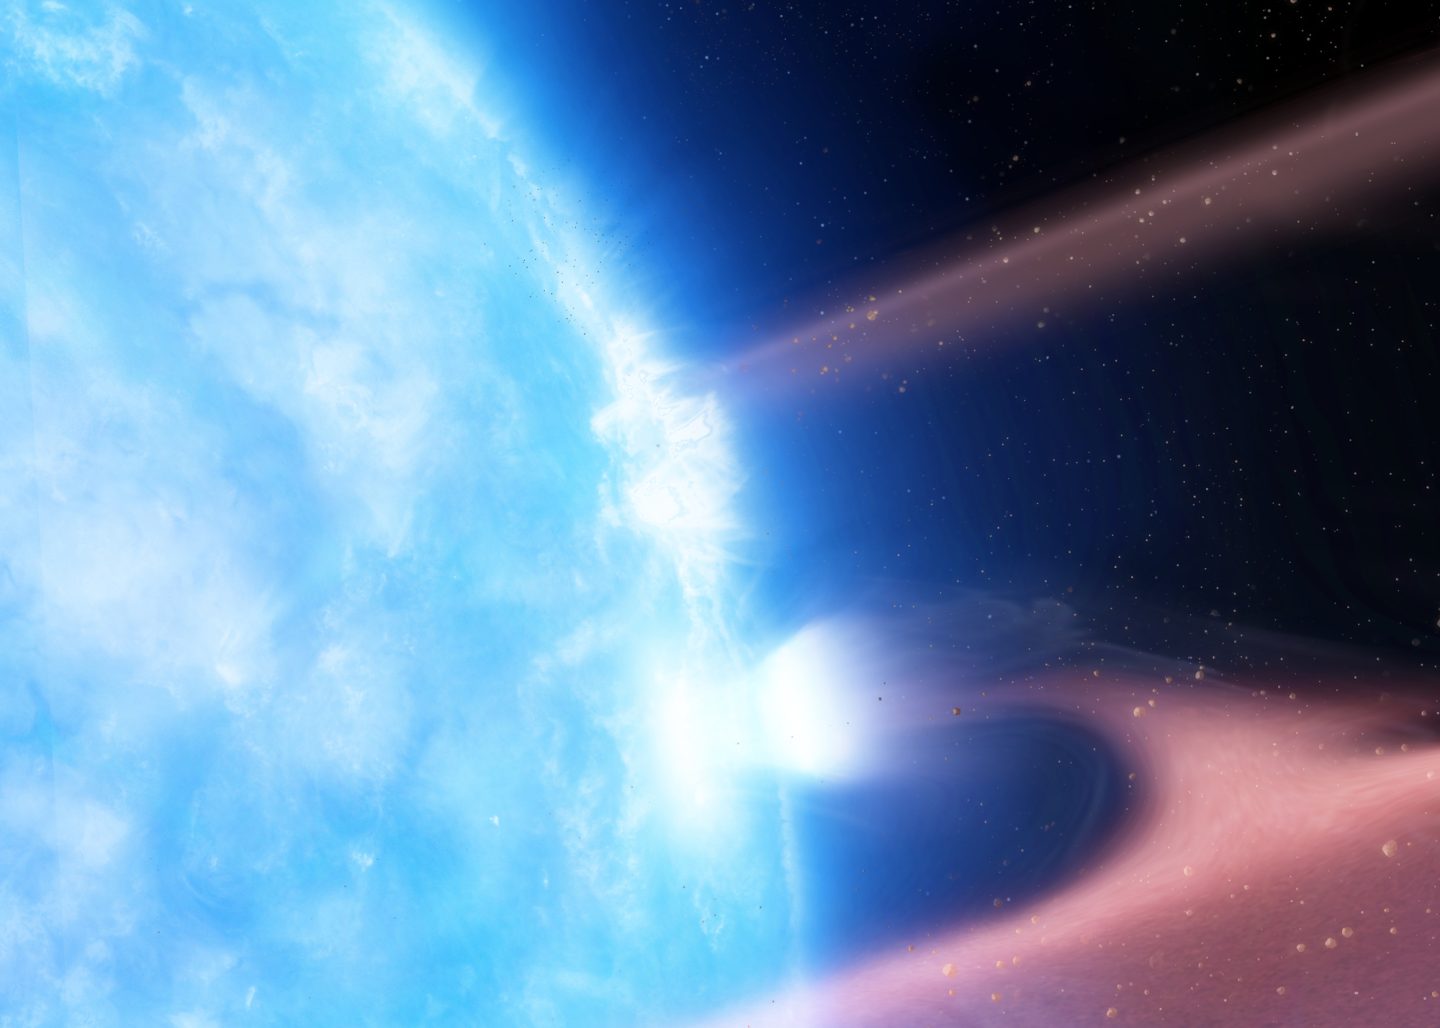 بقايا النجوم الميتة تصطف بطريقة غامضة في مركز مجرتنا